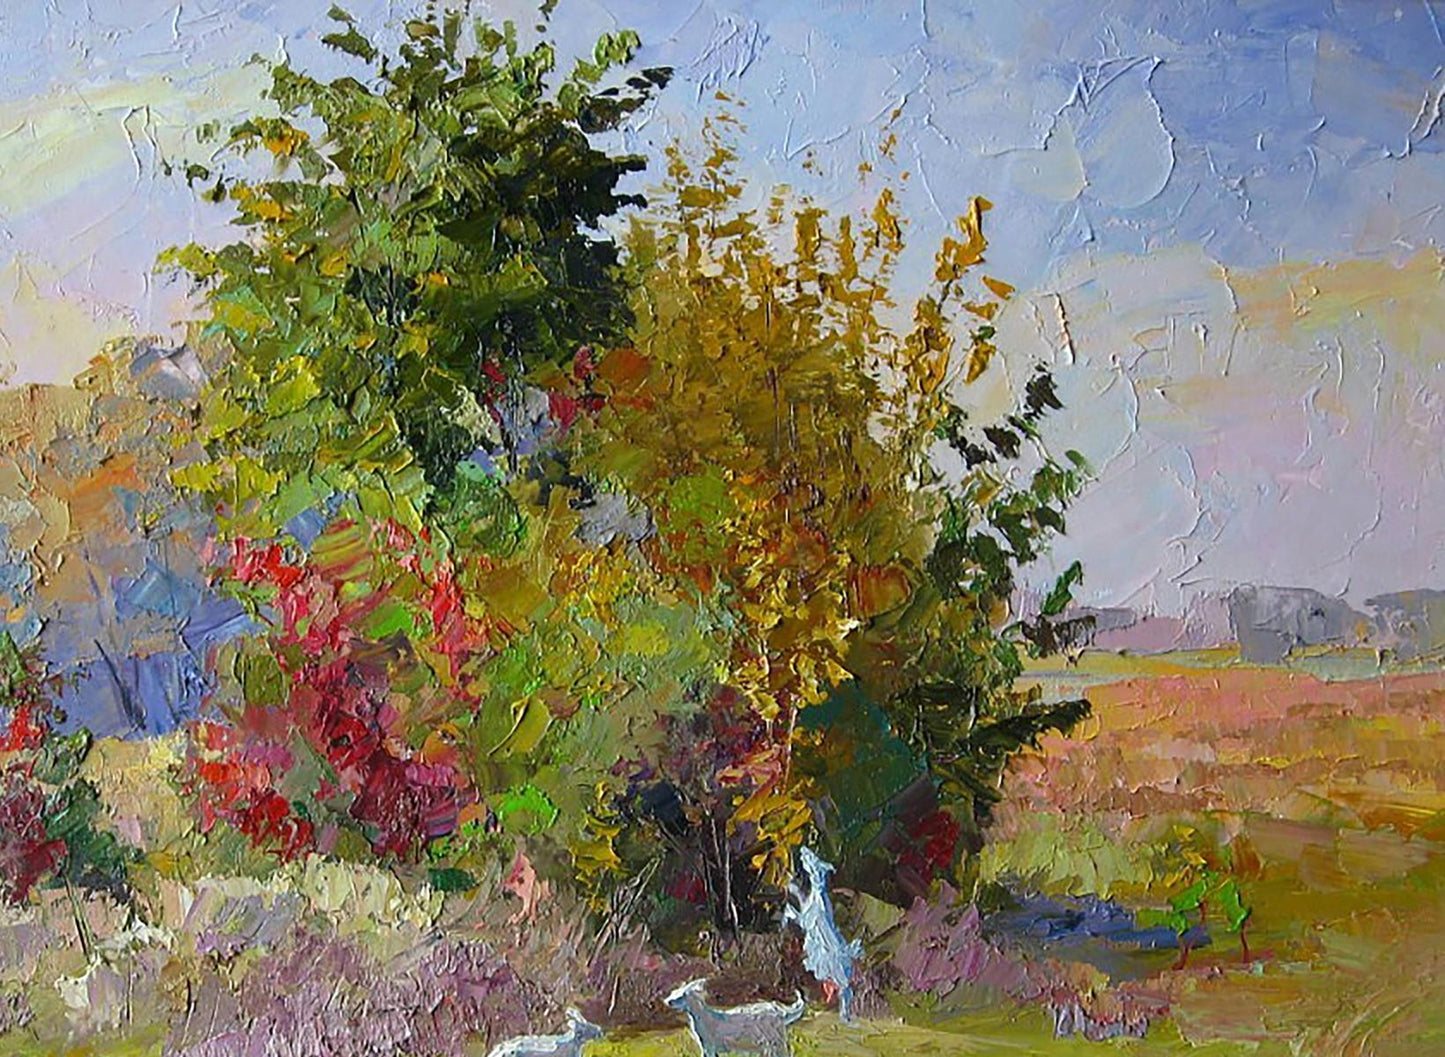 Oil painting October day / Serdyuk Boris Petrovich